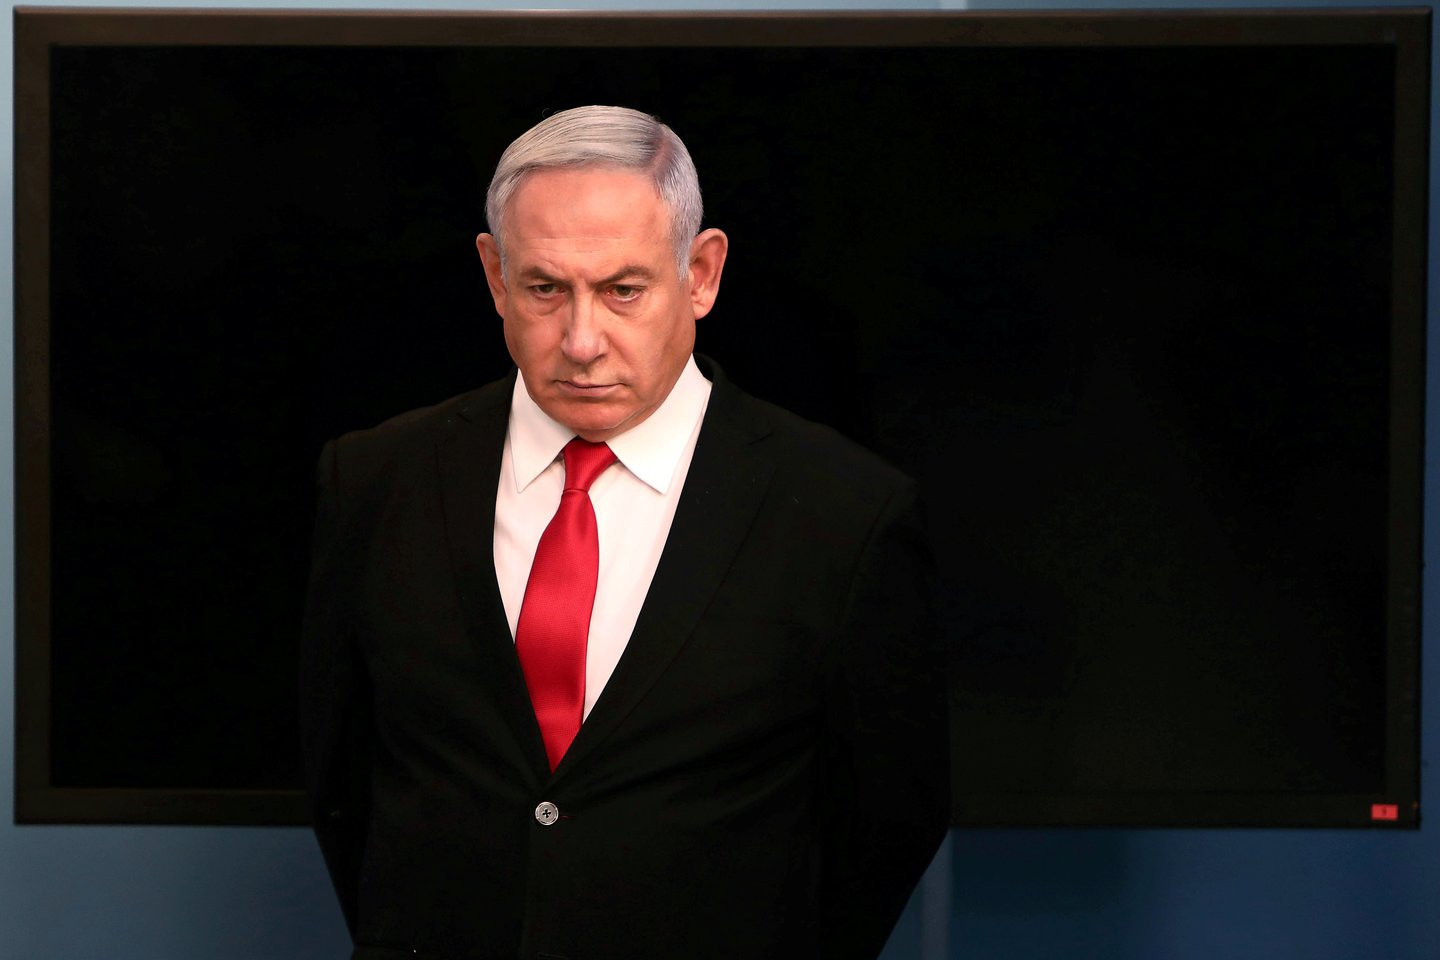  Izraelio teismas sekmadienį pradeda nagrinėti ministro pirmininko Benjamino Netanyahu baudžiamąją bylą dėl virtinės kaltinimų korupcija, kuriuos jis neigia.  <br> Reuters/Scanpix nuotr.